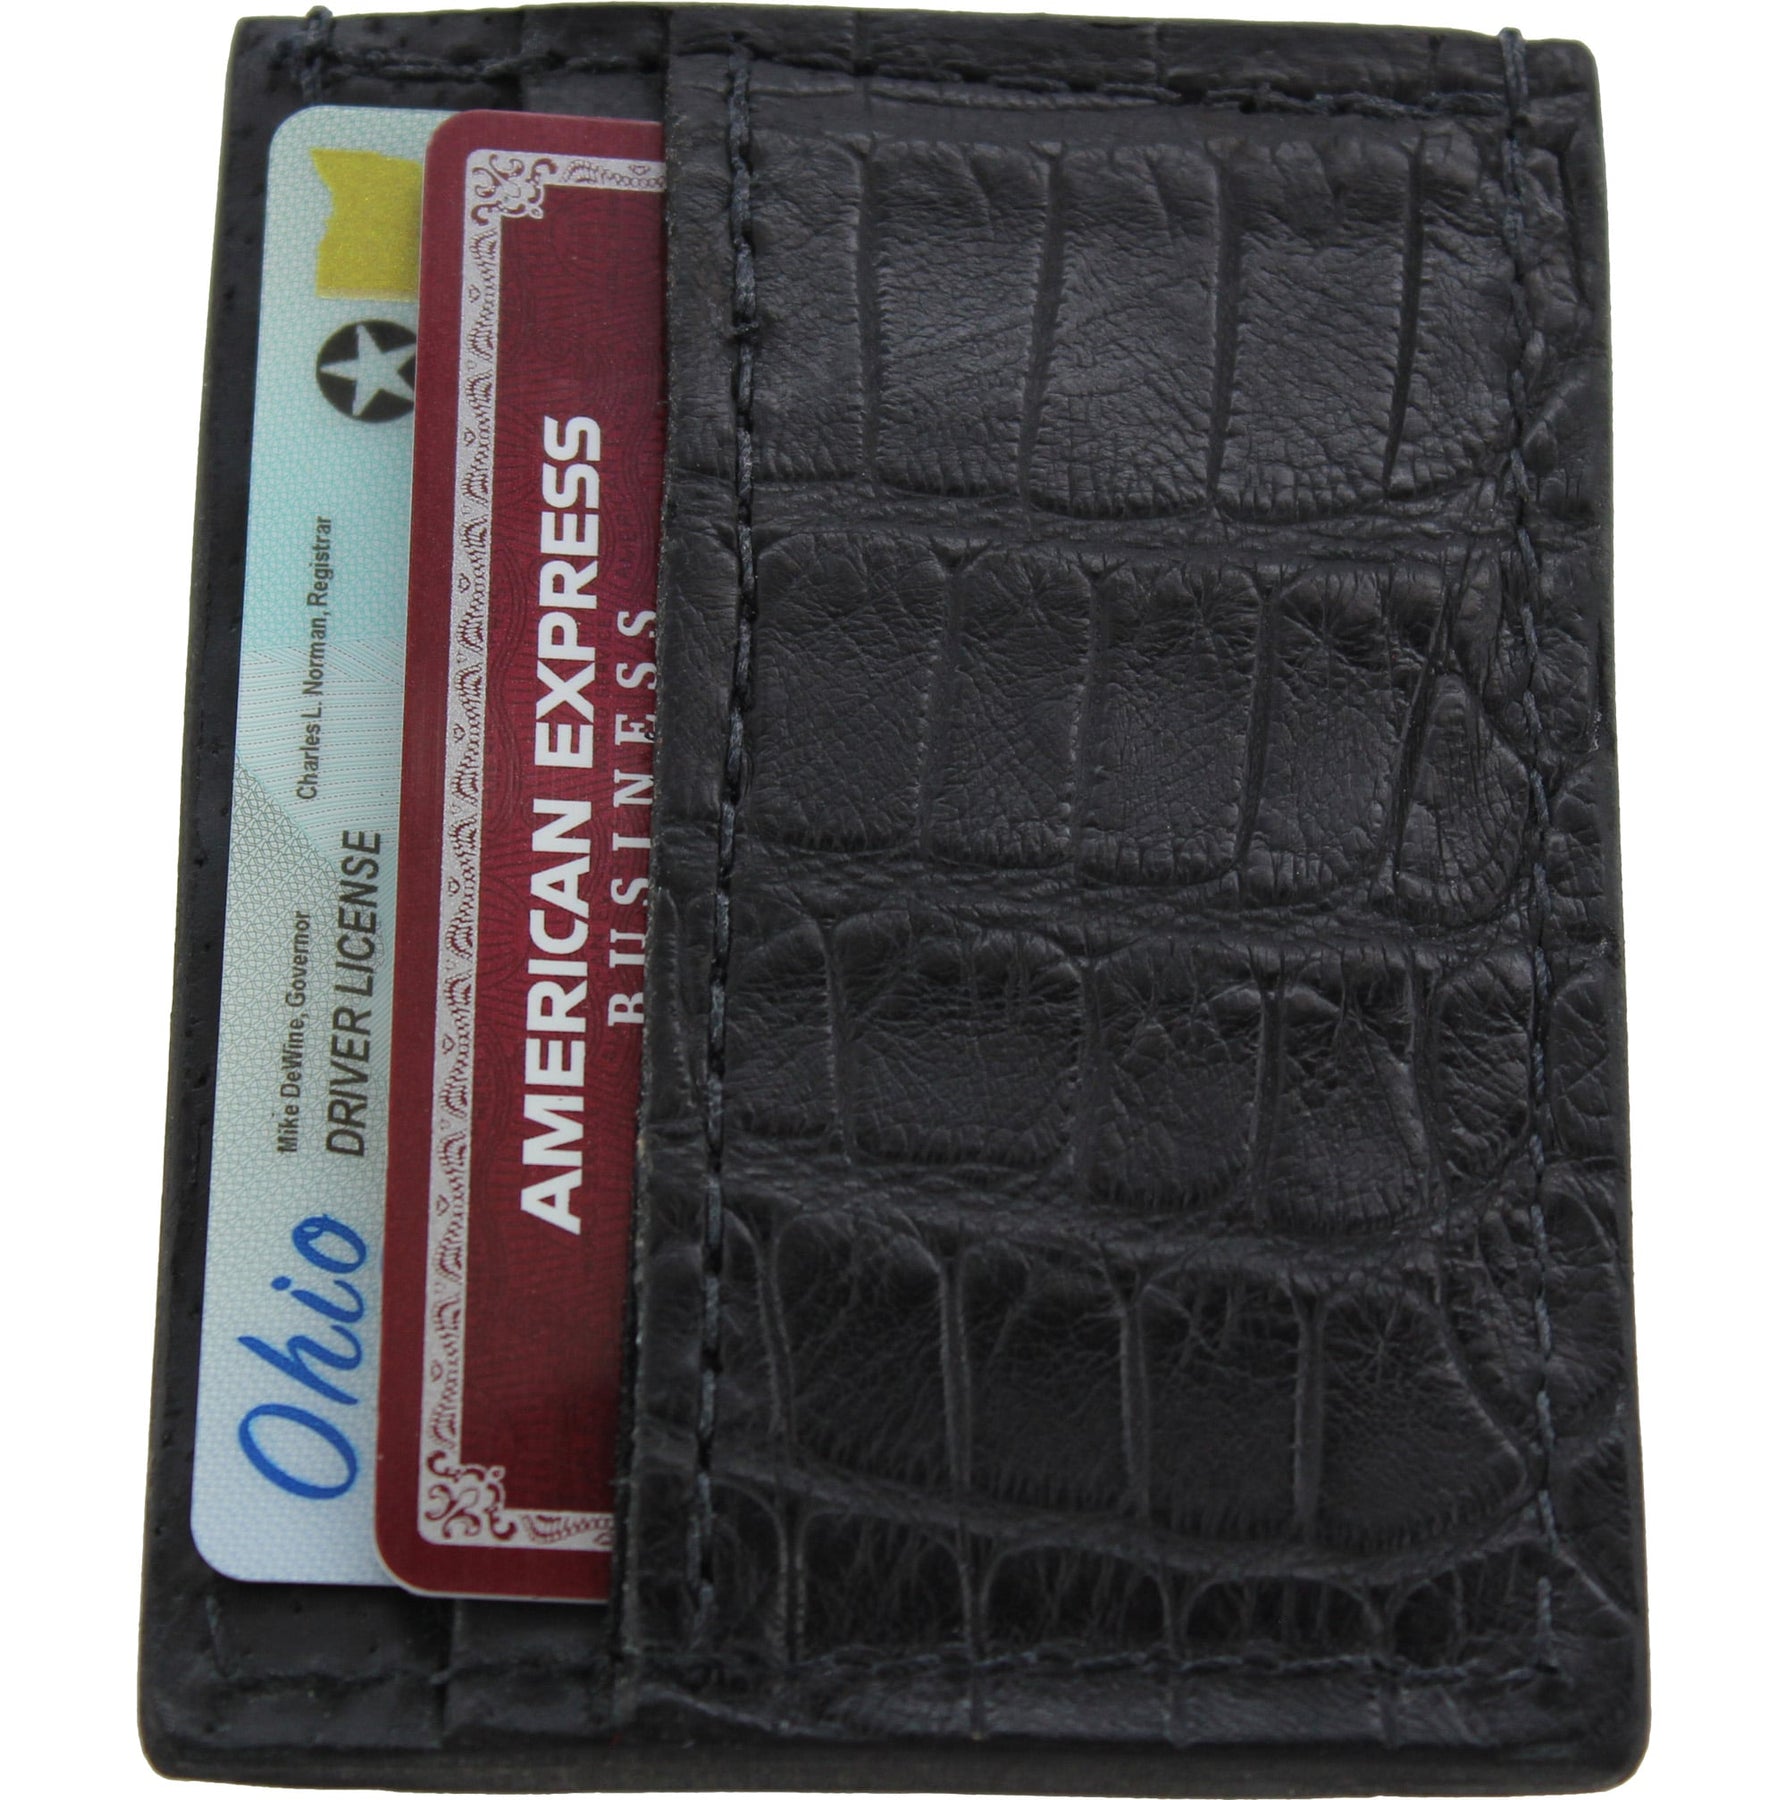 Slim Black Alligator Front Pocket Money Clip Card Holder Pouch Wallet